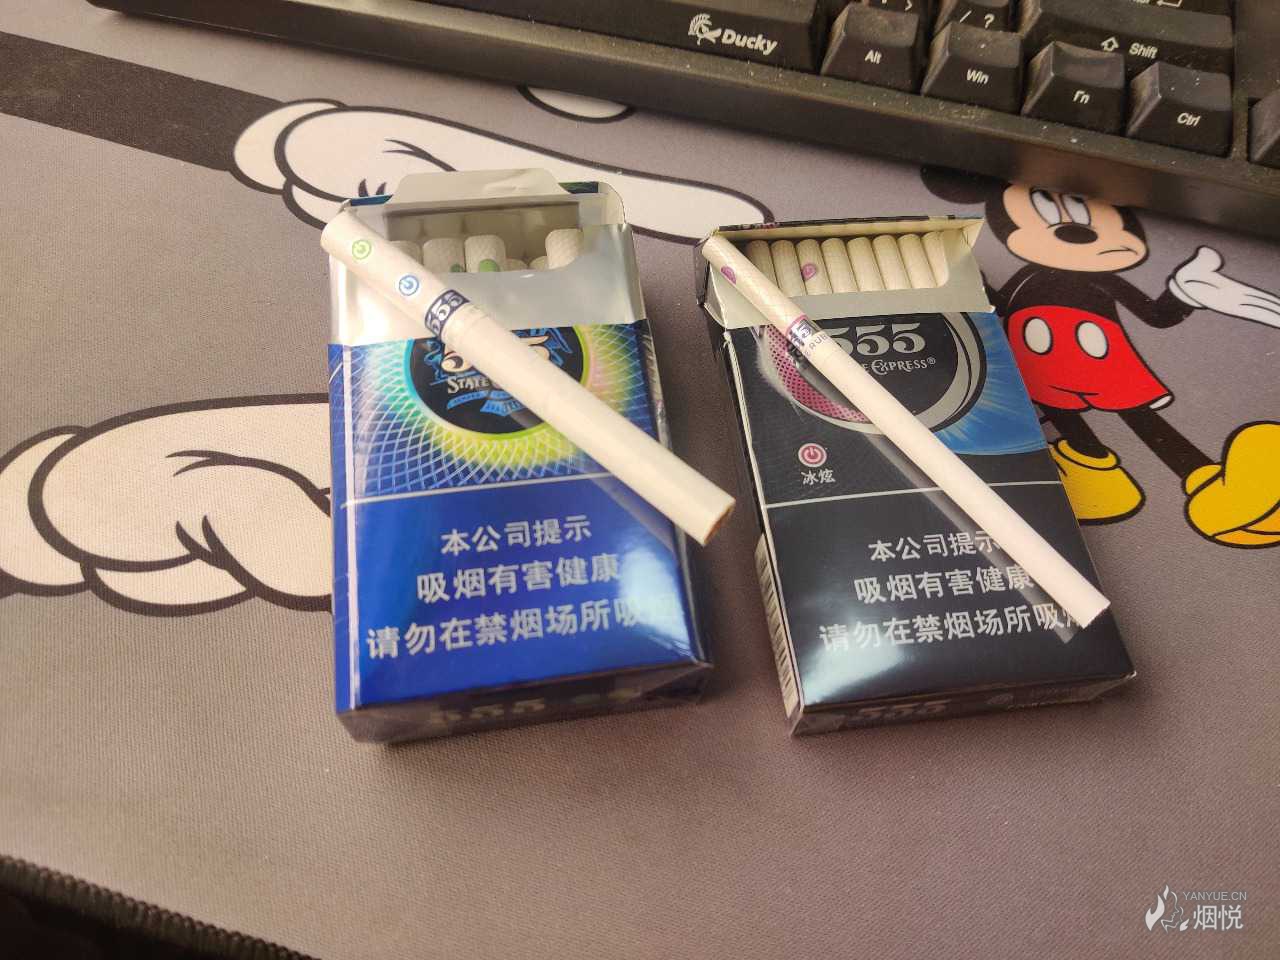 555香烟冰炫图片